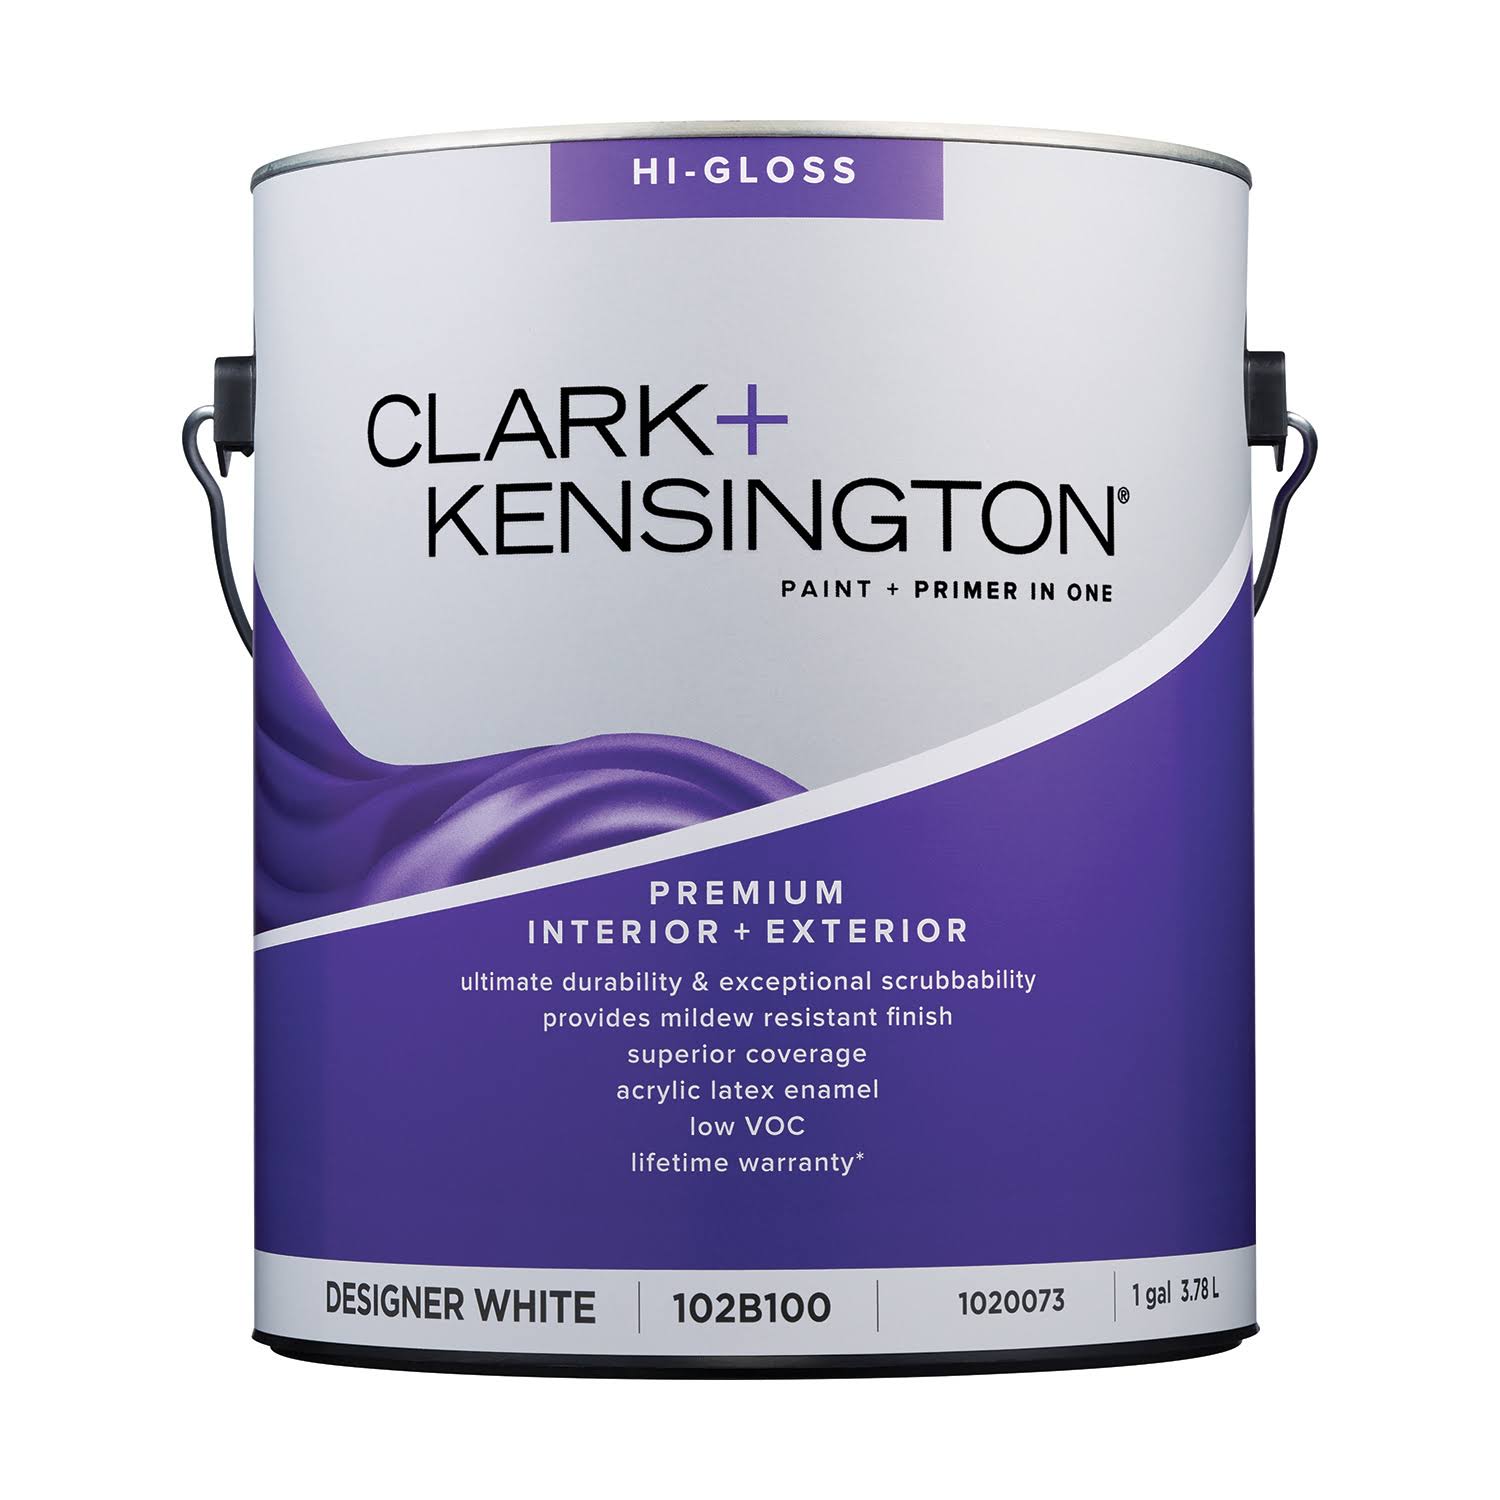 Clark+kensington Hi-Gloss Designer White Premium Paint Exterior and Interior 1 gal.